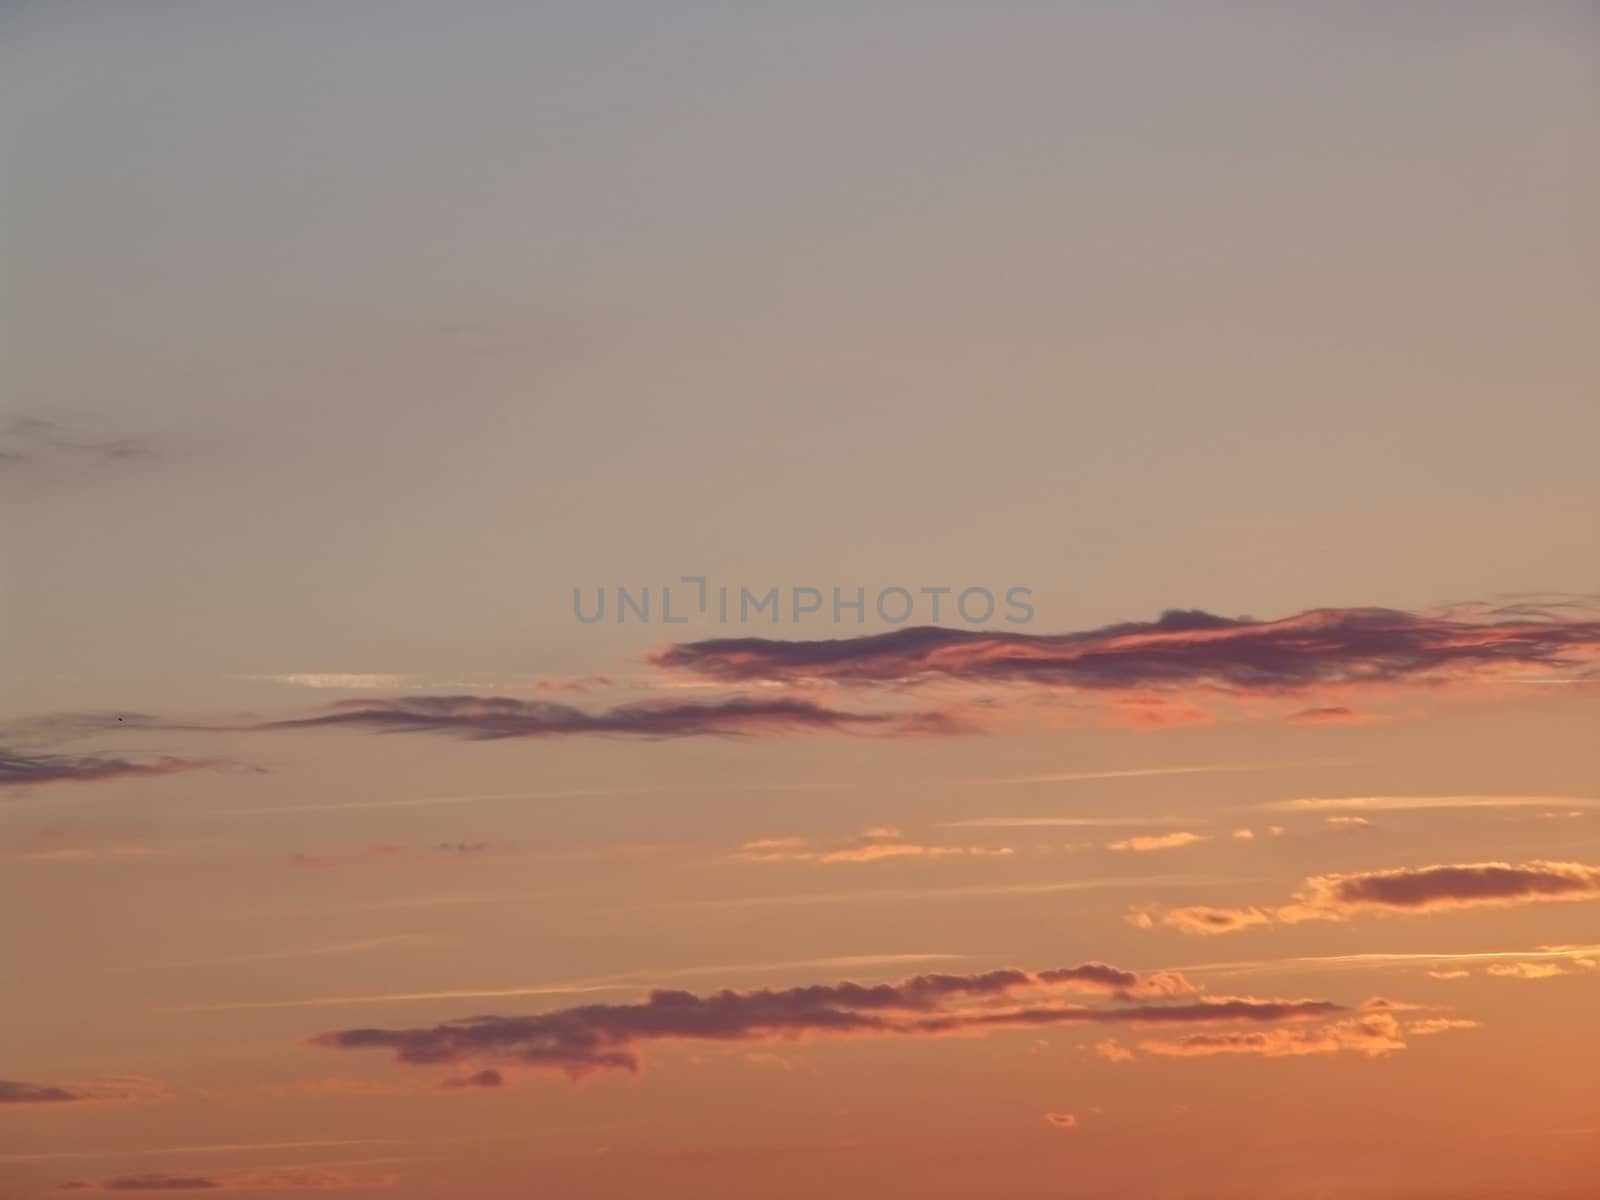 Sunset sky by elena_vz